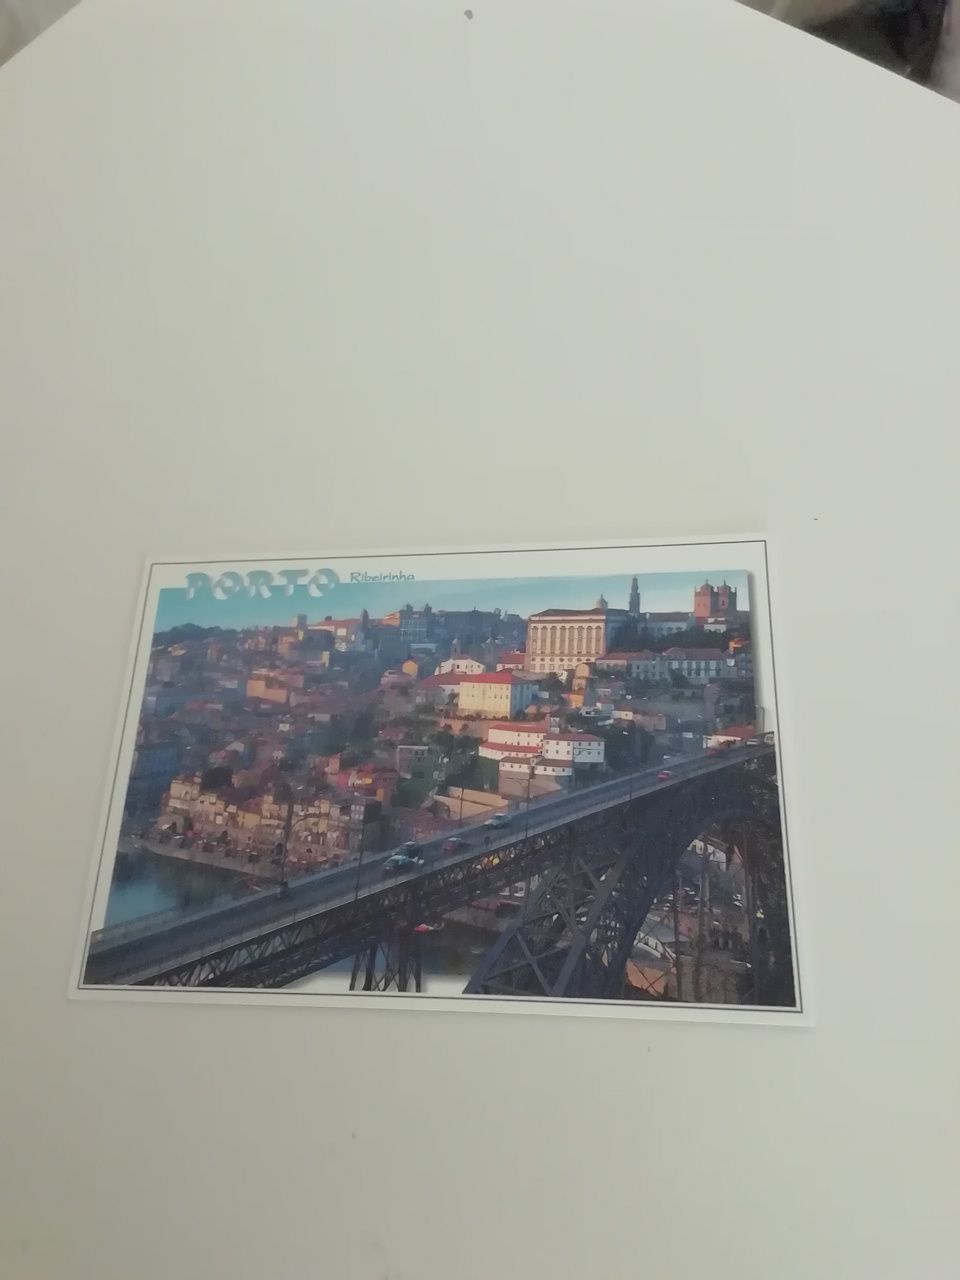 Postal do Porto - Ribeirinha de 1997